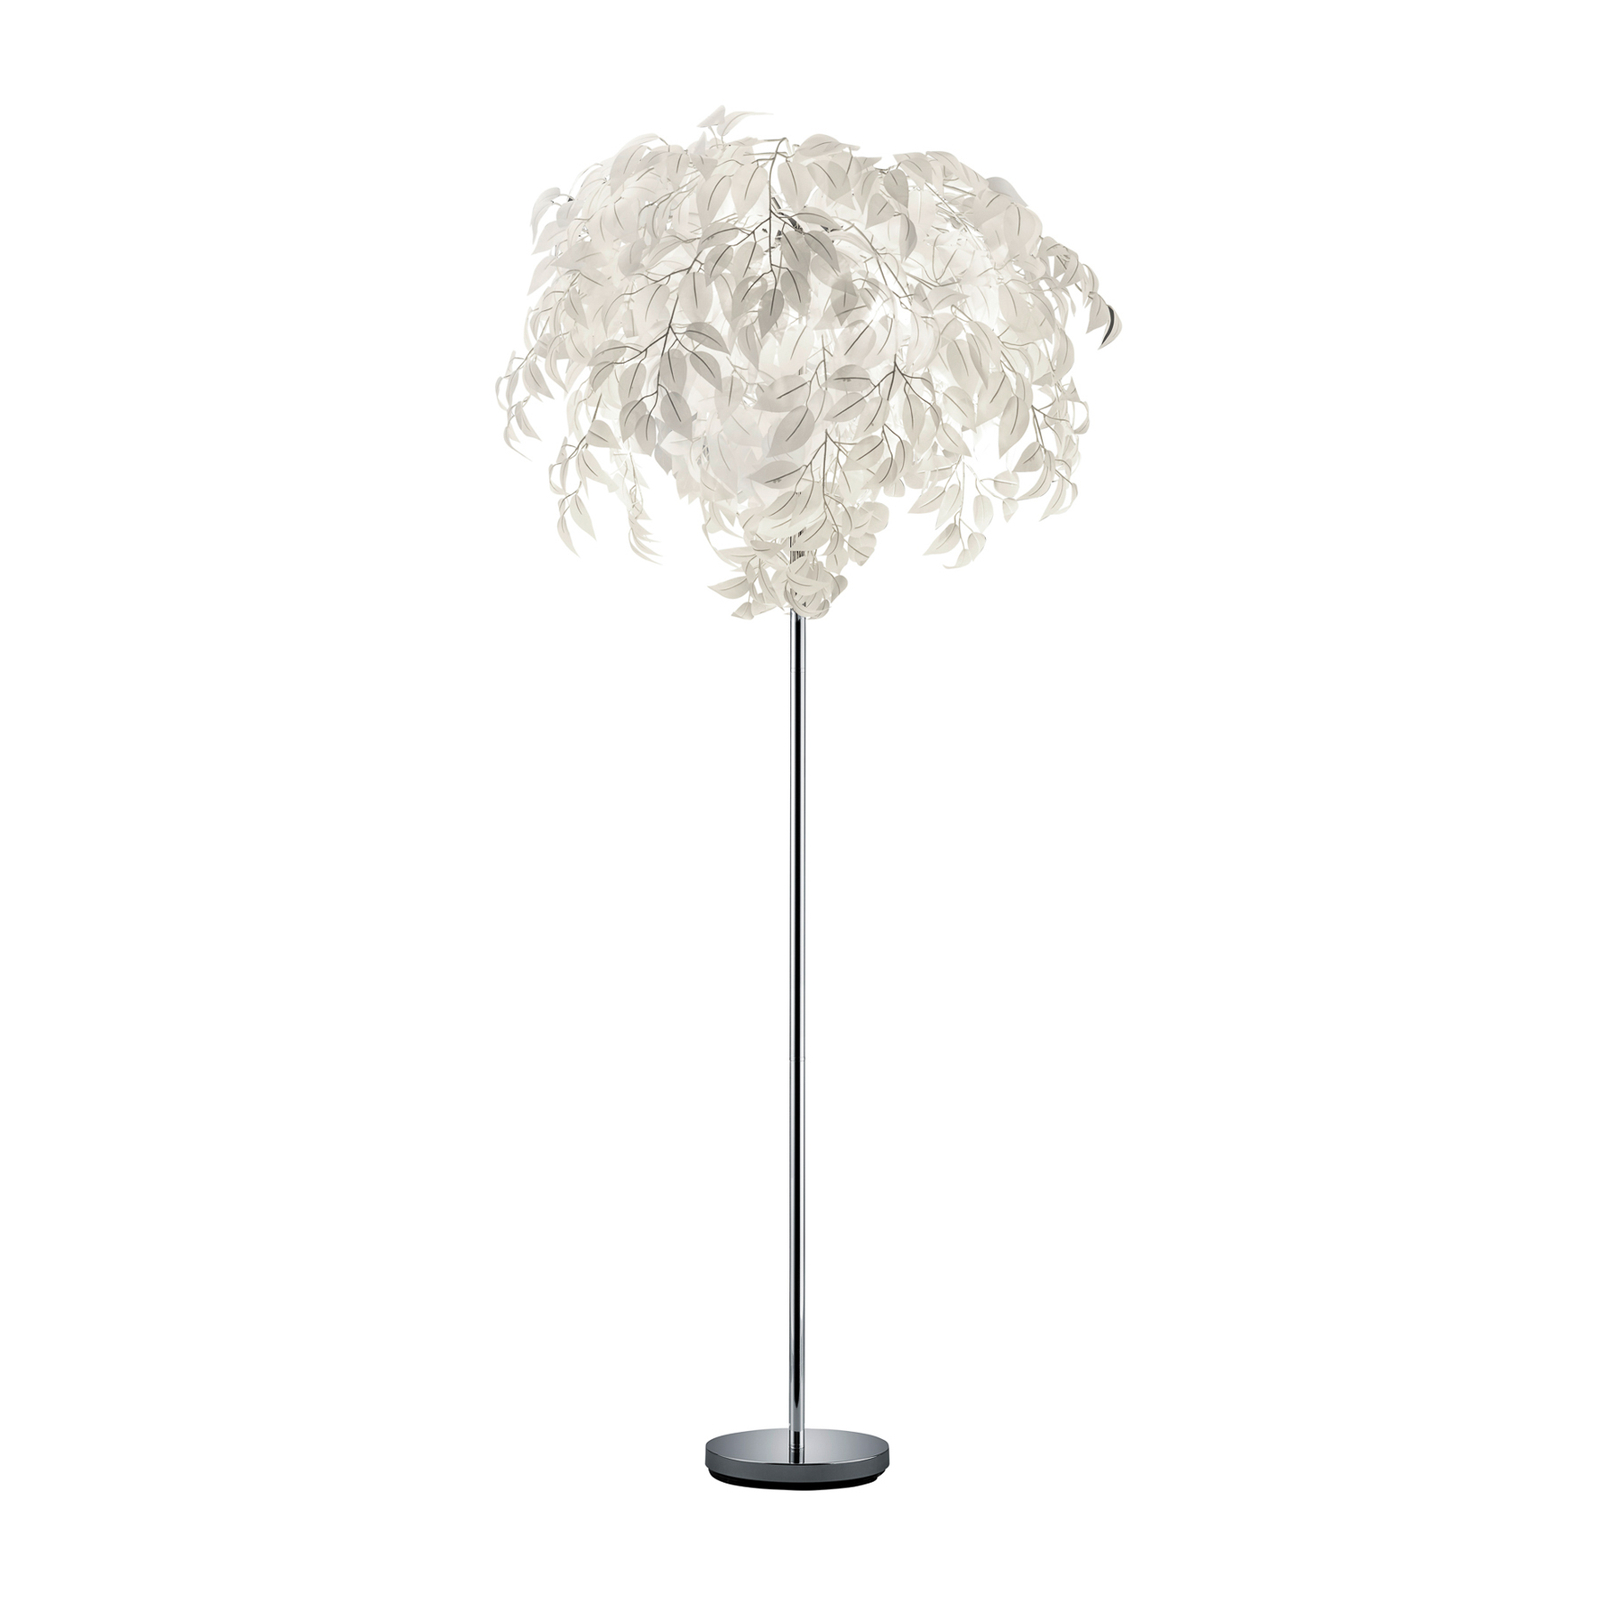 Leavy gulvlampe, høyde 180 cm, krom/hvit, metall/plast